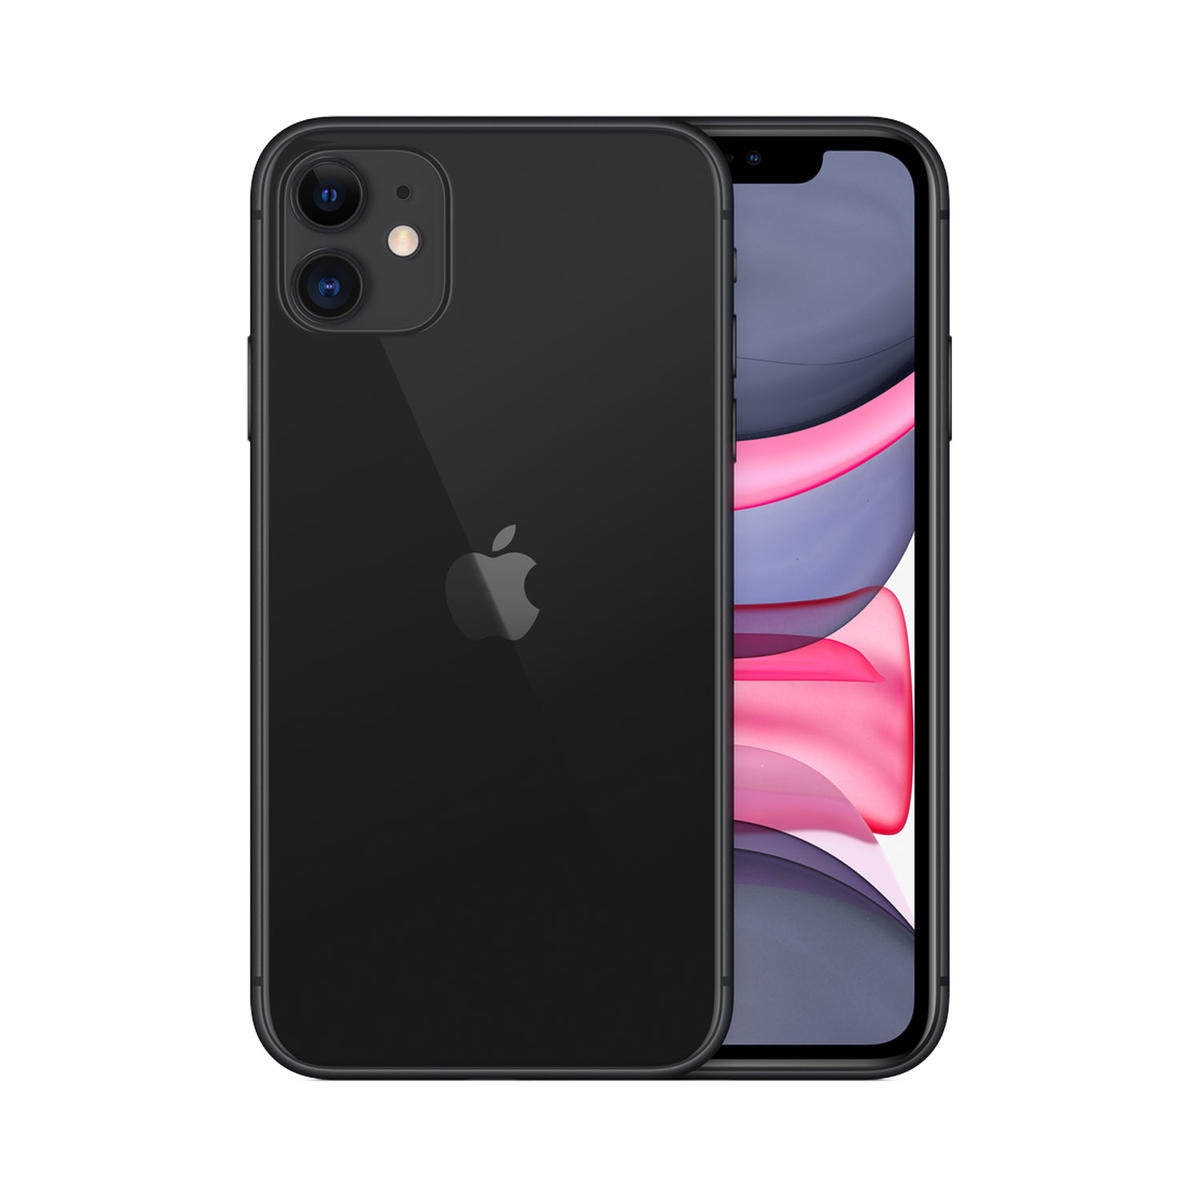 iPhone 11 128gb - Negro